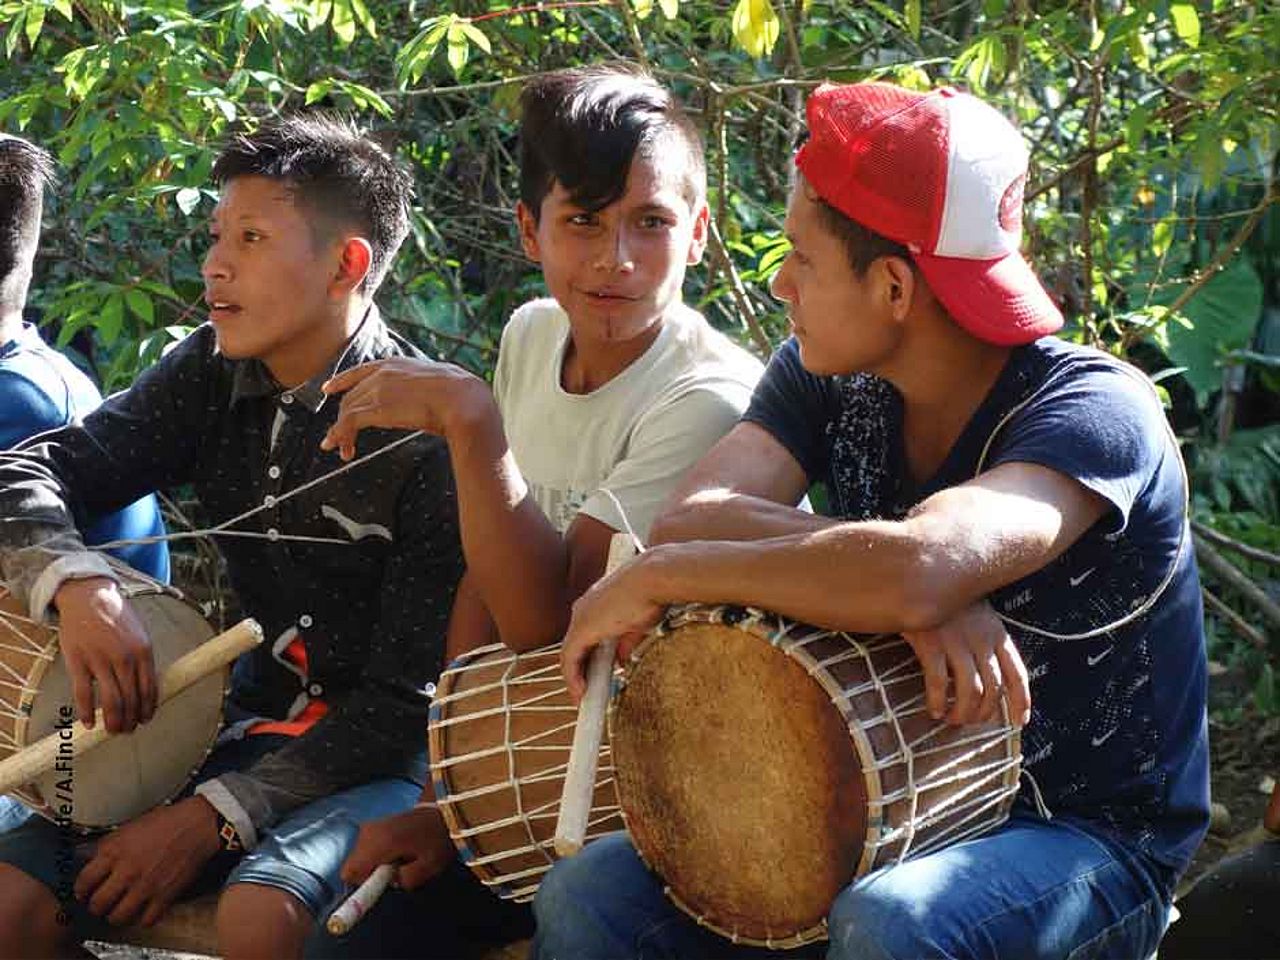 Jungendliche Indigene machen Musik ©OroVerde – A. Fincke